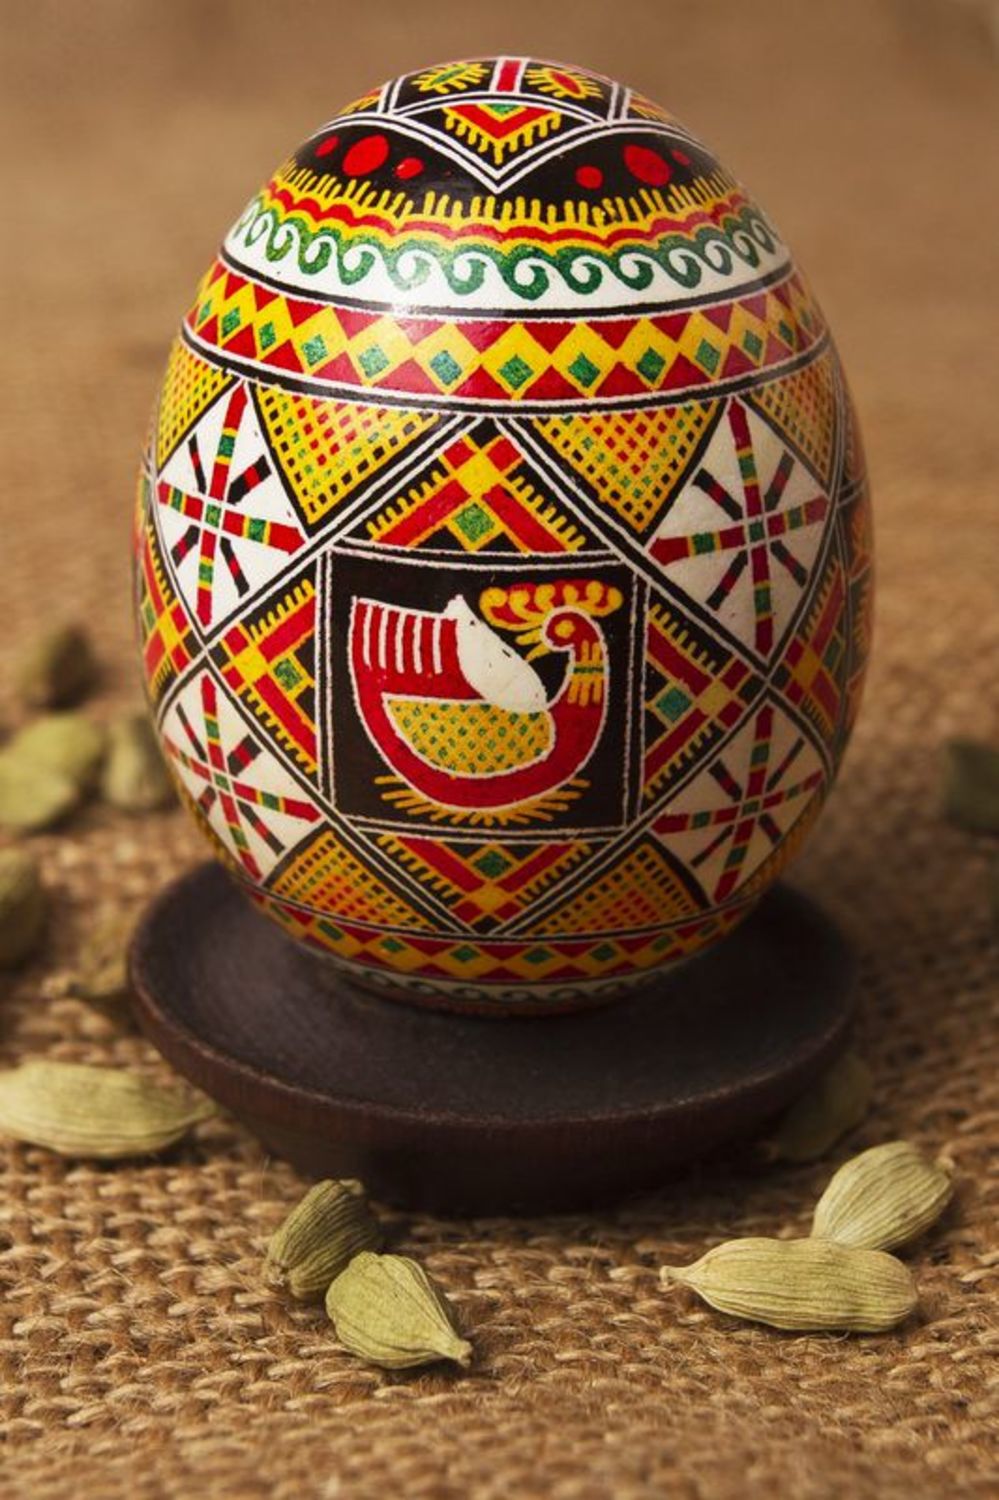 Huevo de Pascua pintado a mano elemento decorativo souvenir original hermoso foto 1